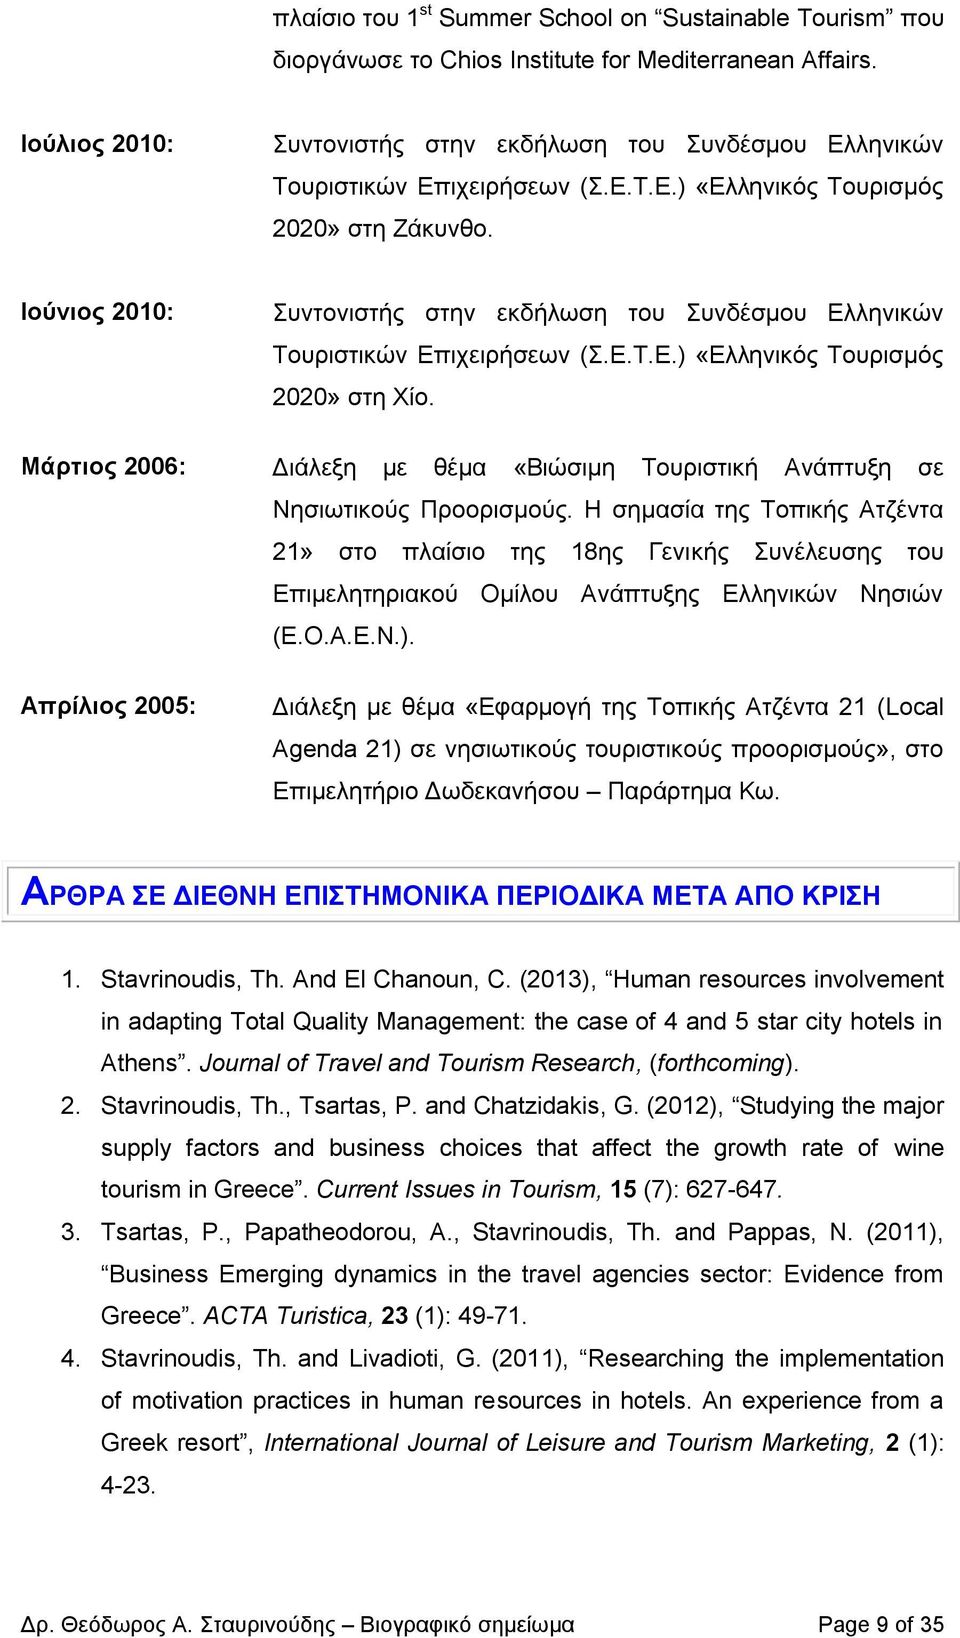 Ιούνιος 2010: Μάρτιος 2006: Απρίλιος 2005: Συντονιστής στην εκδήλωση του Συνδέσμου Ελληνικών Τουριστικών Επιχειρήσεων (Σ.Ε.Τ.Ε.) «Ελληνικός Τουρισμός 2020» στη Χίο.